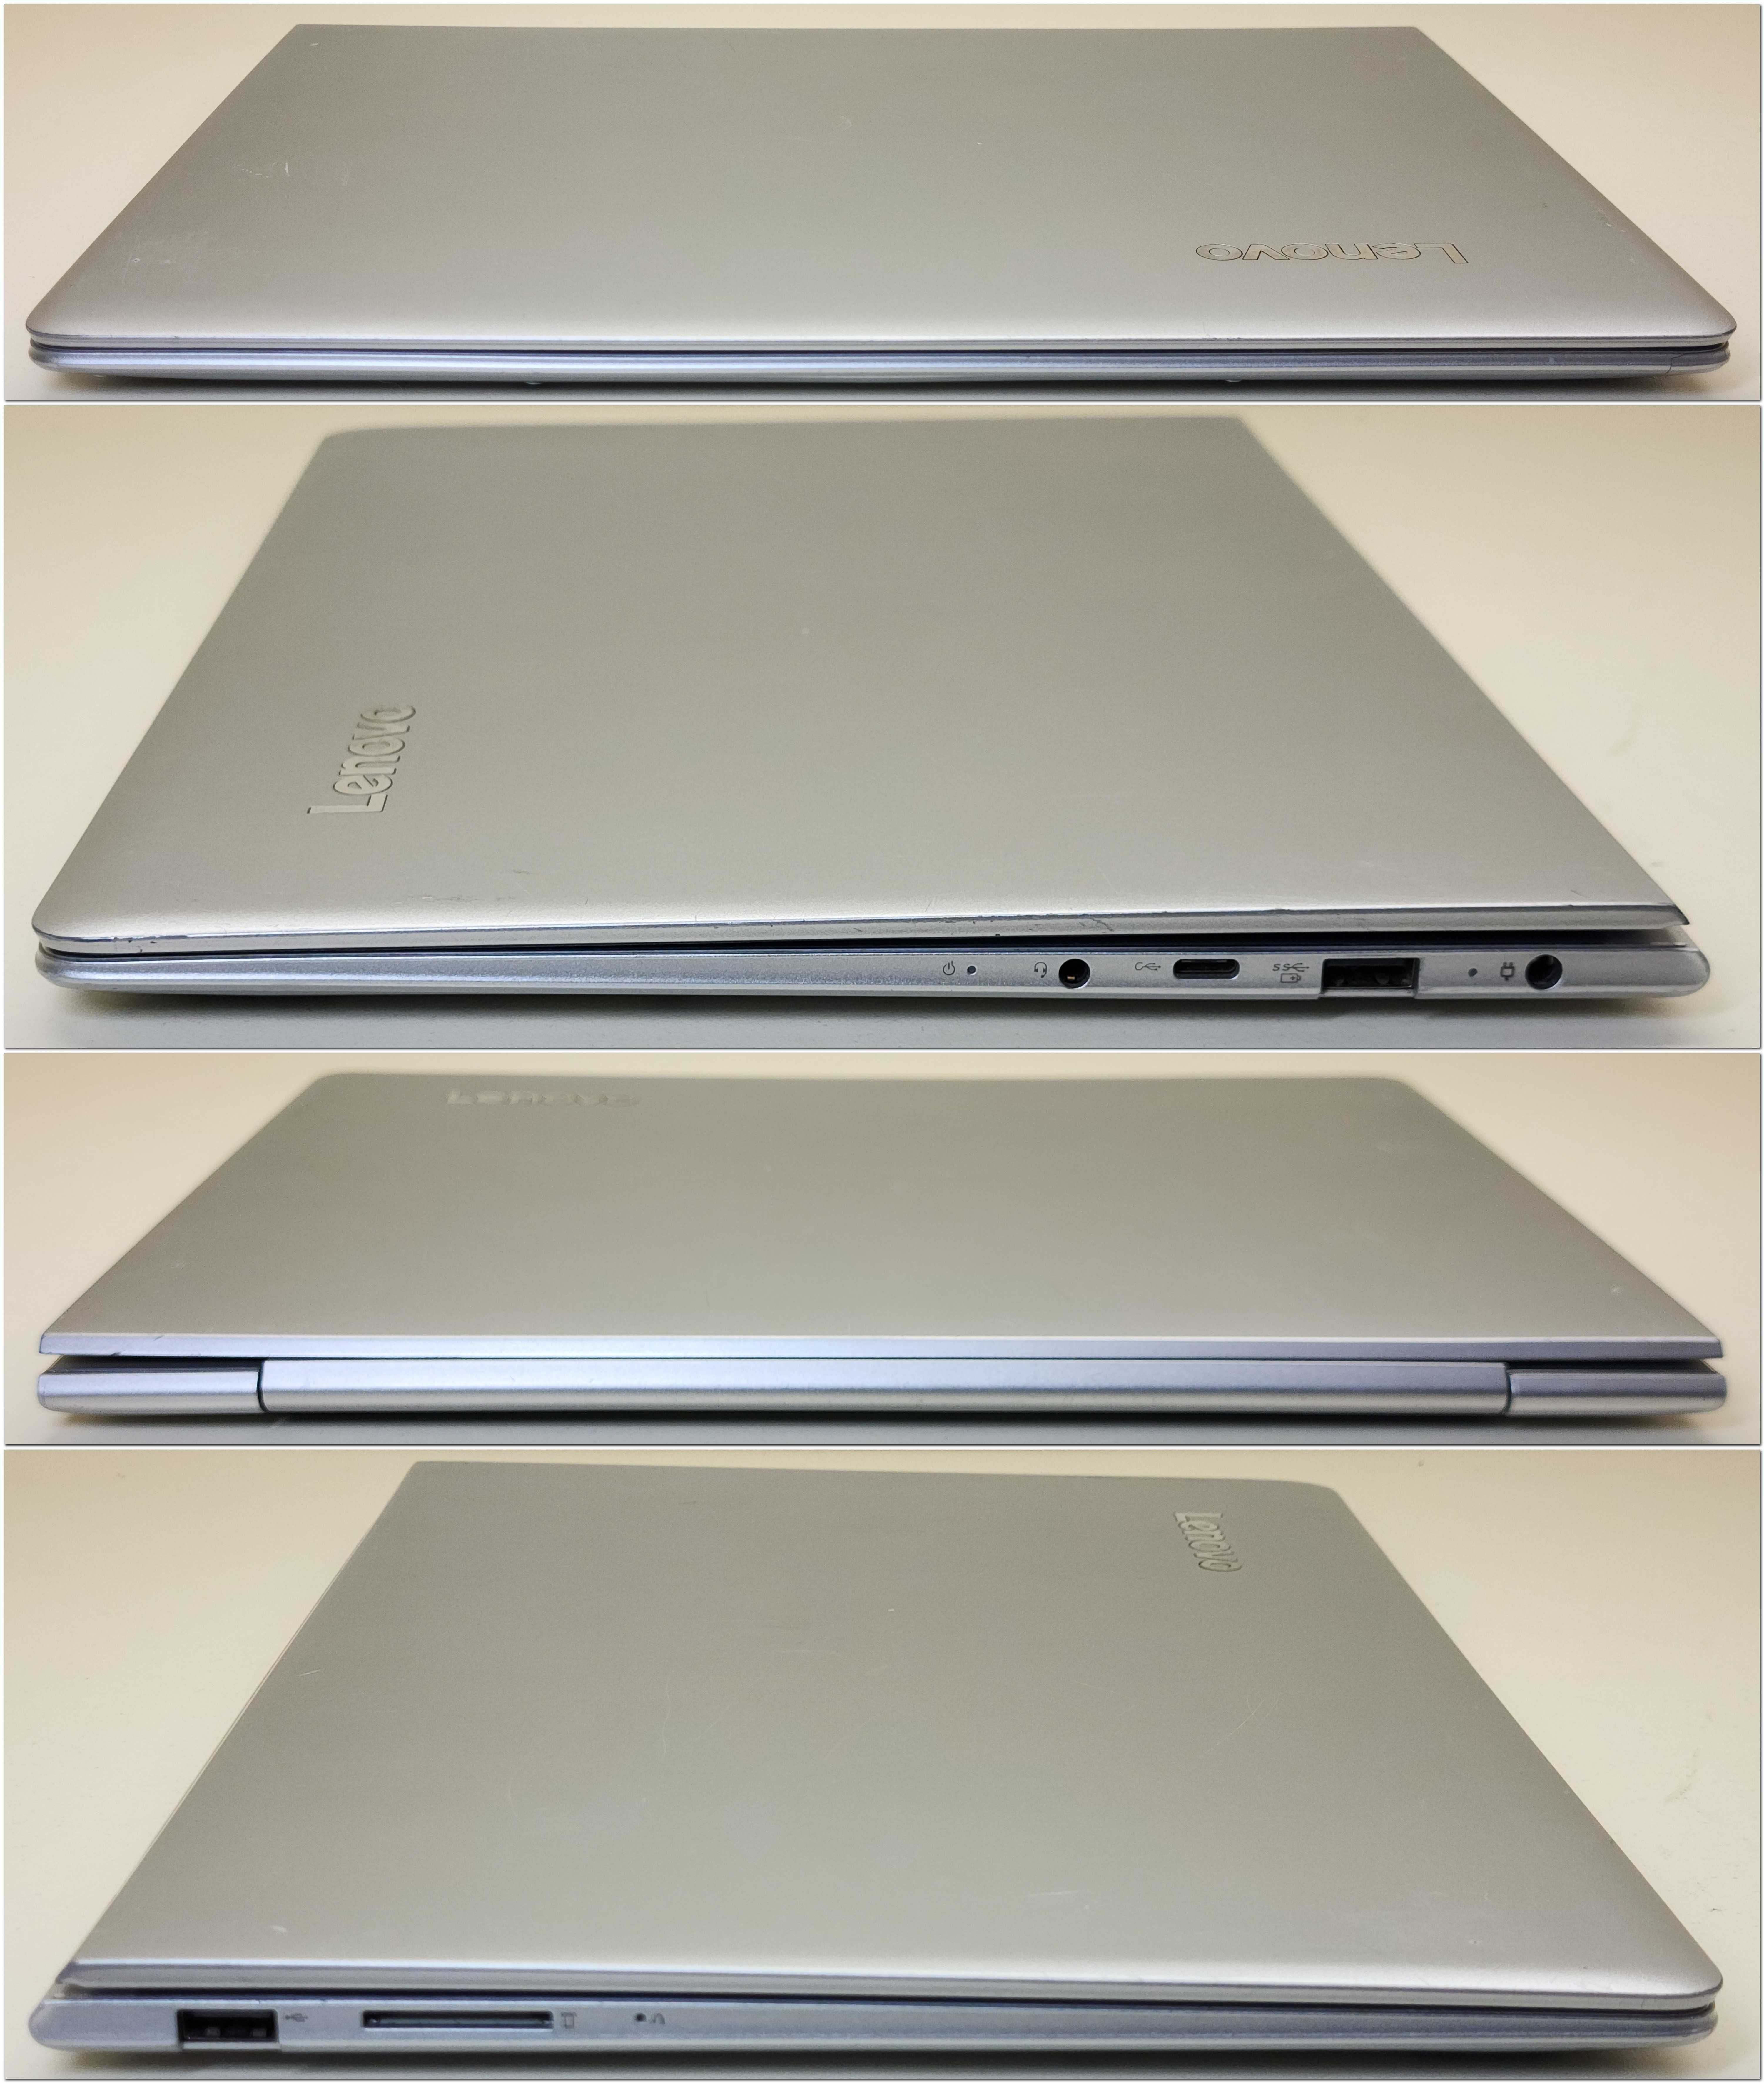 Ноутбук Lenovo 710S i7/8gb/240gb/nVidia 940MX/13.3 FHD IPS Touch/WIN